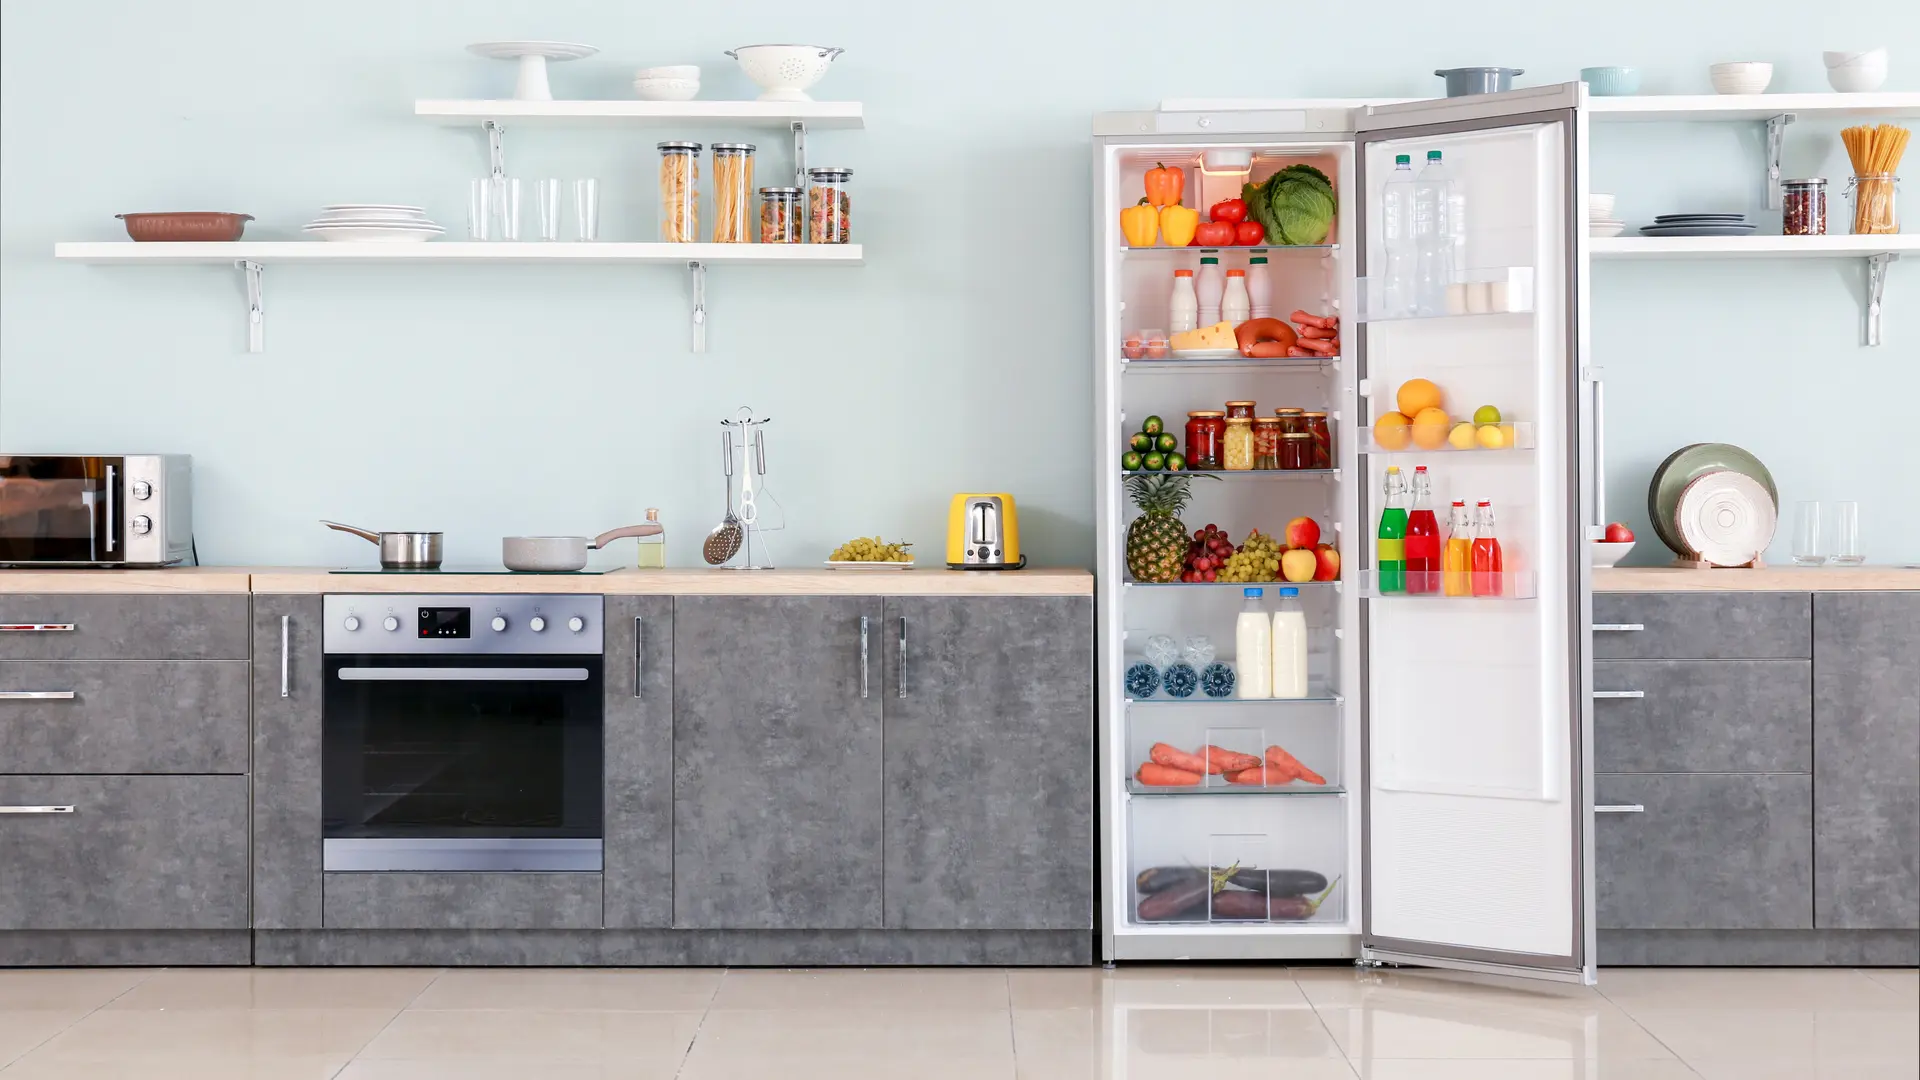 Foto de cozinha completa, com geladeira branca de uma porta aberta, com alimentos e bebidas dentro